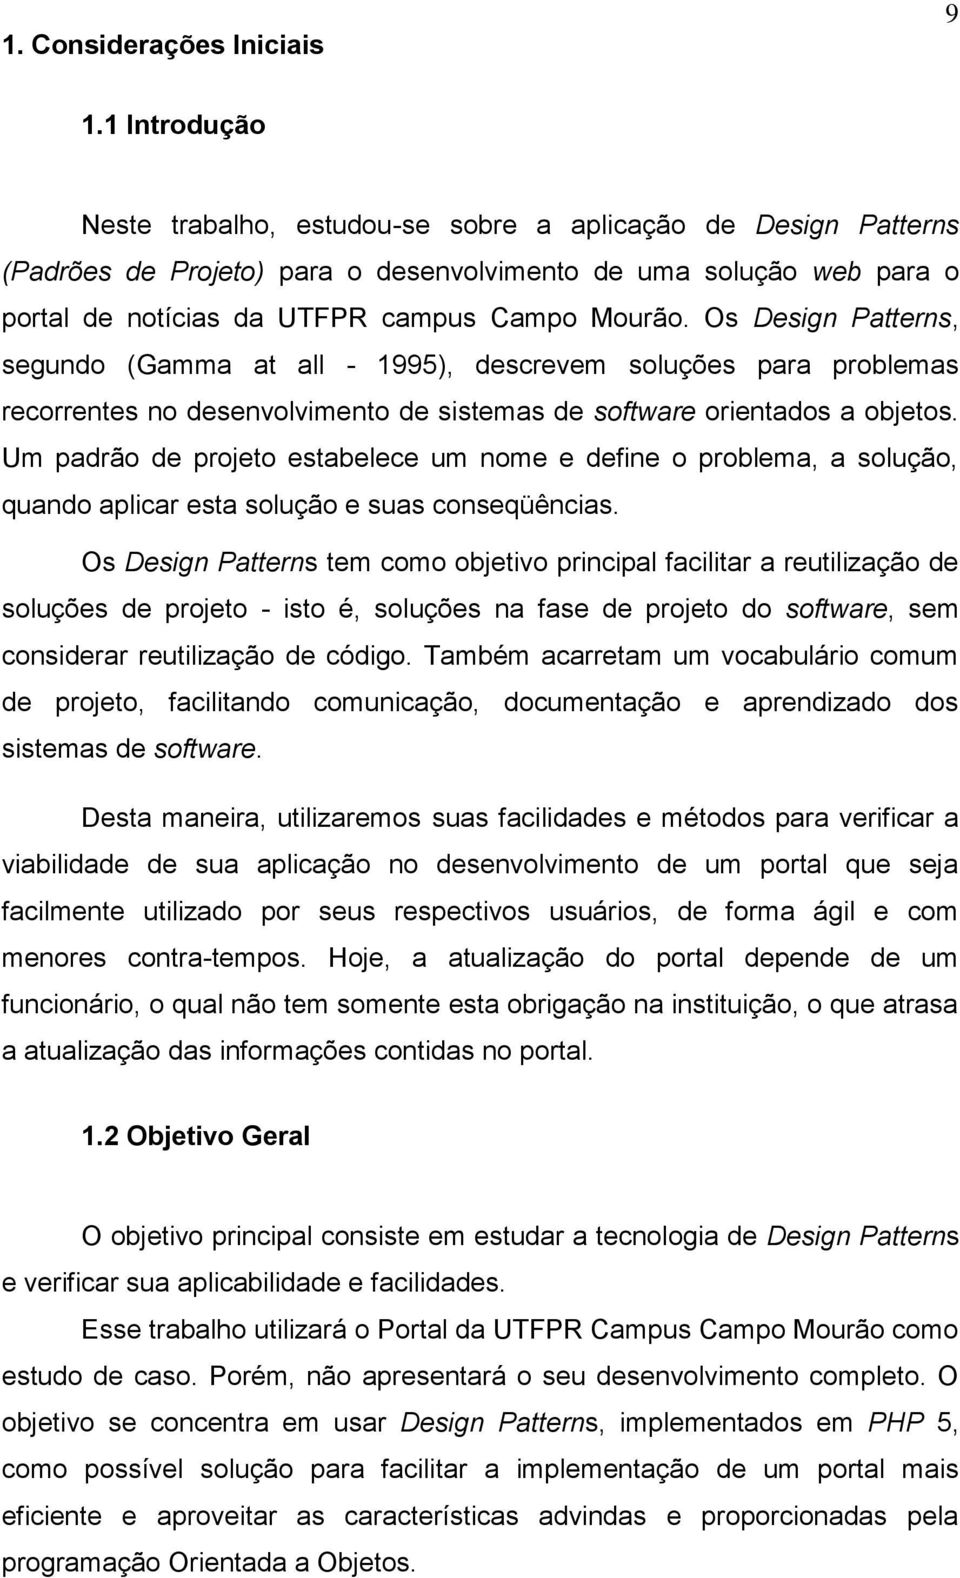 Os Design Patterns, segundo (Gamma at all - 1995), descrevem soluções para problemas recorrentes no desenvolvimento de sistemas de software orientados a objetos.